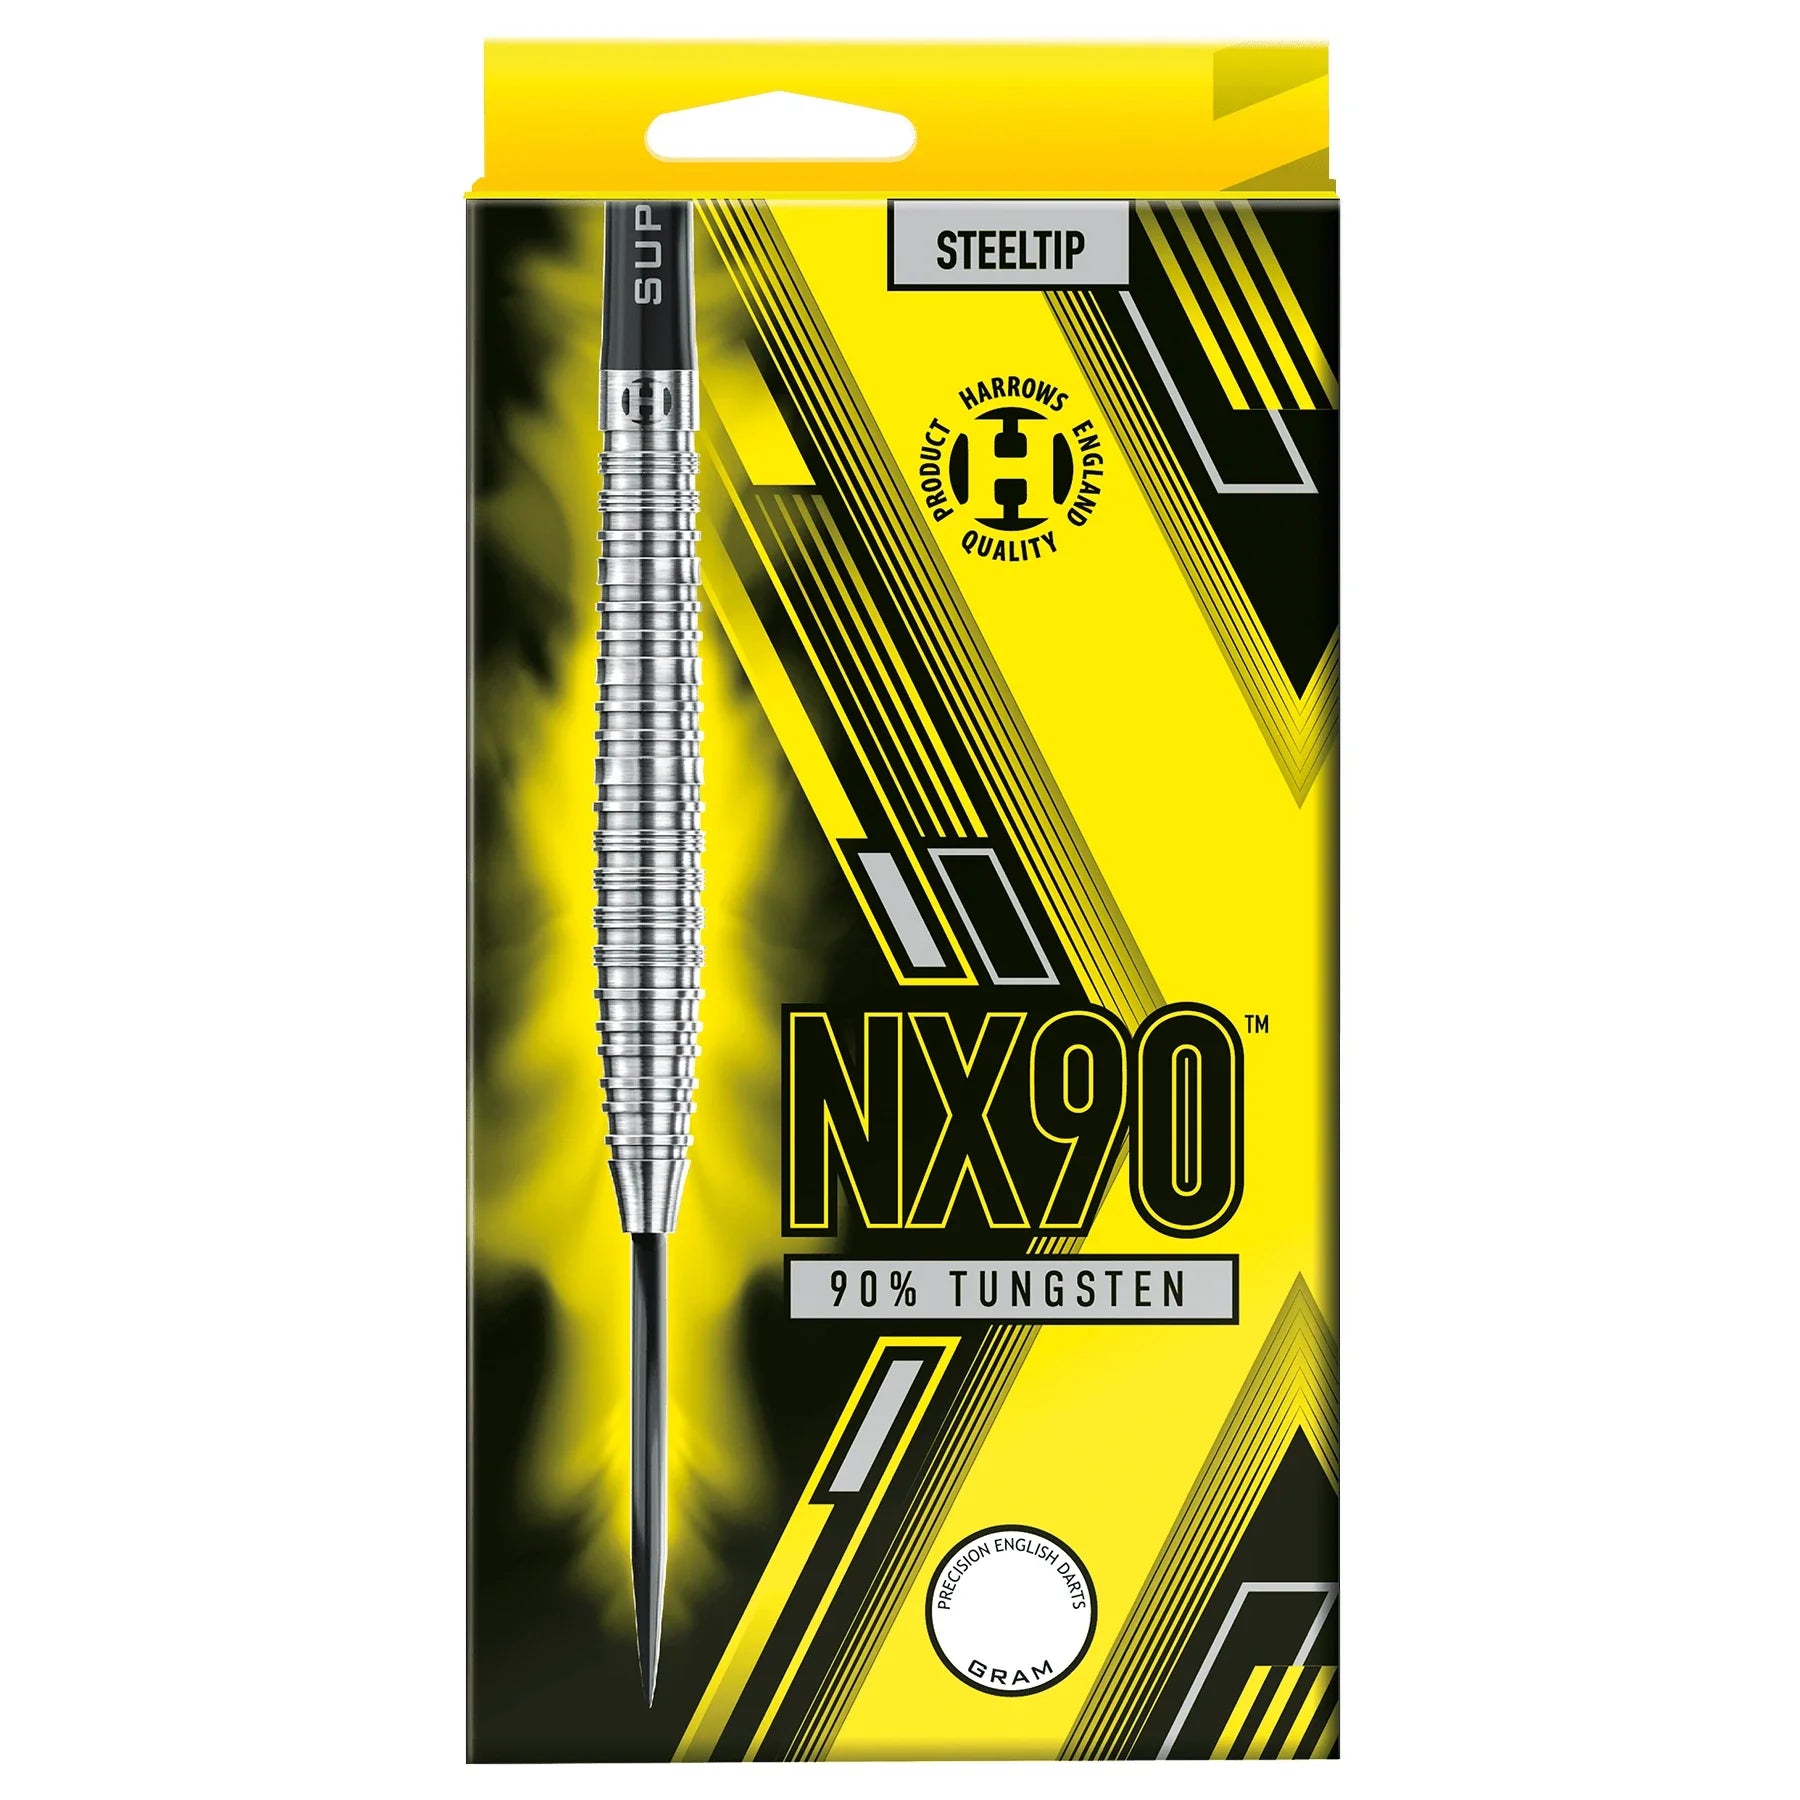 Harrows NX90 25g Darts